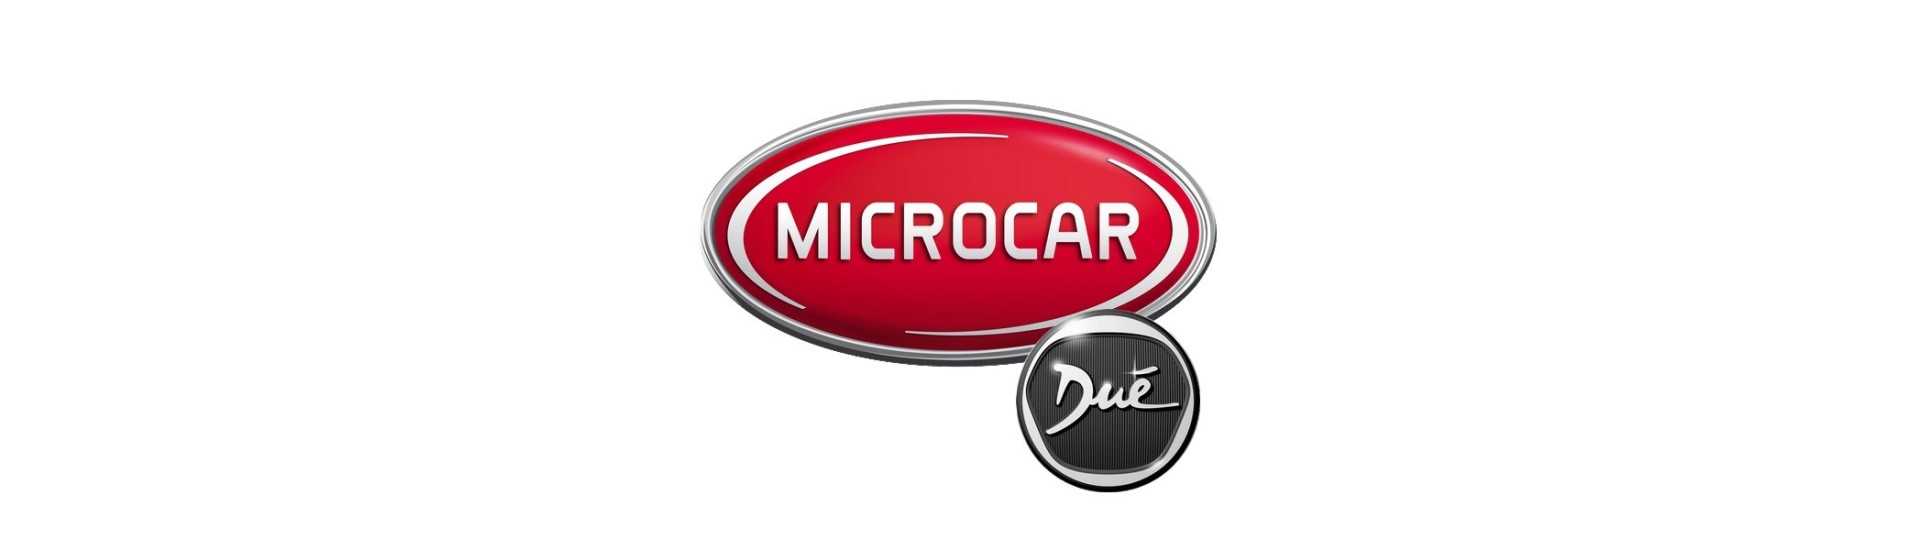 Potentímetro al mejor precio para coche sin permiso Microcar Dué